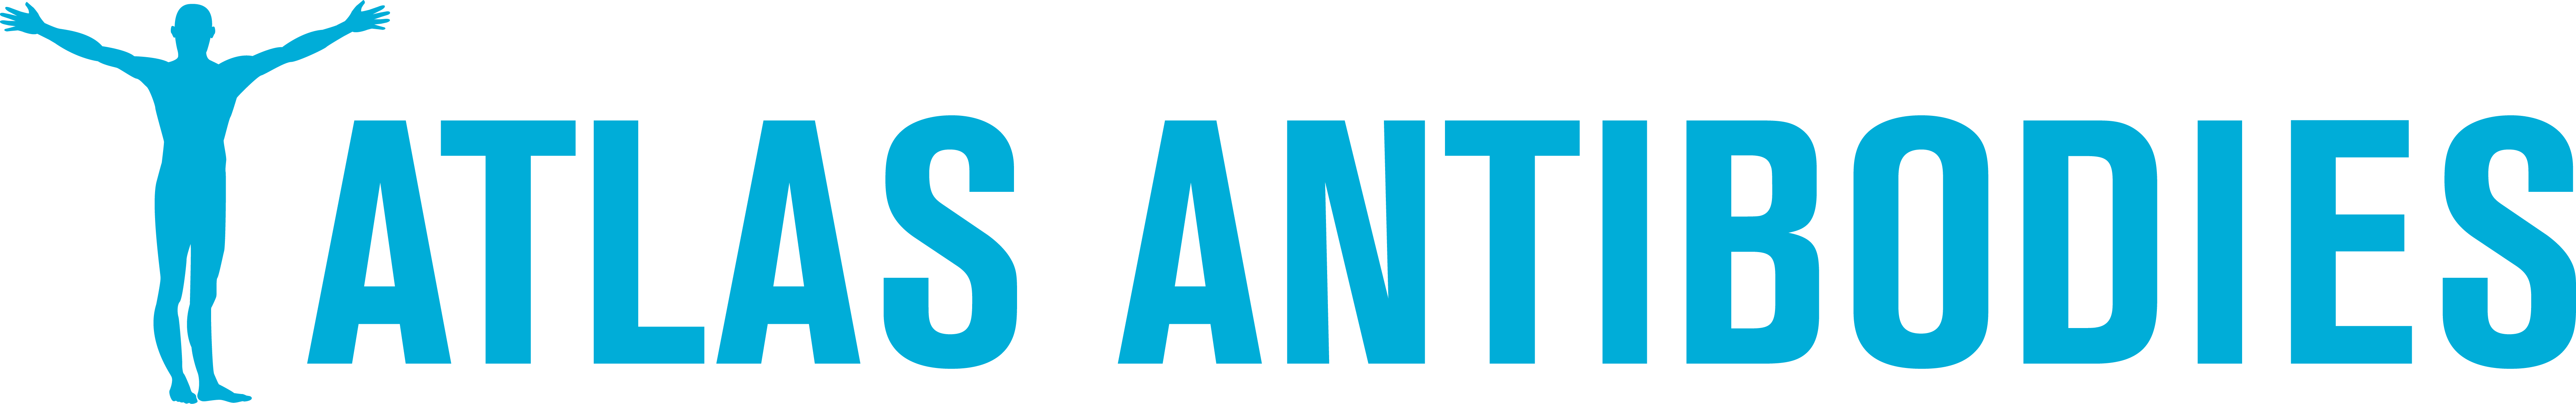 Atlas Antibodies logo.png